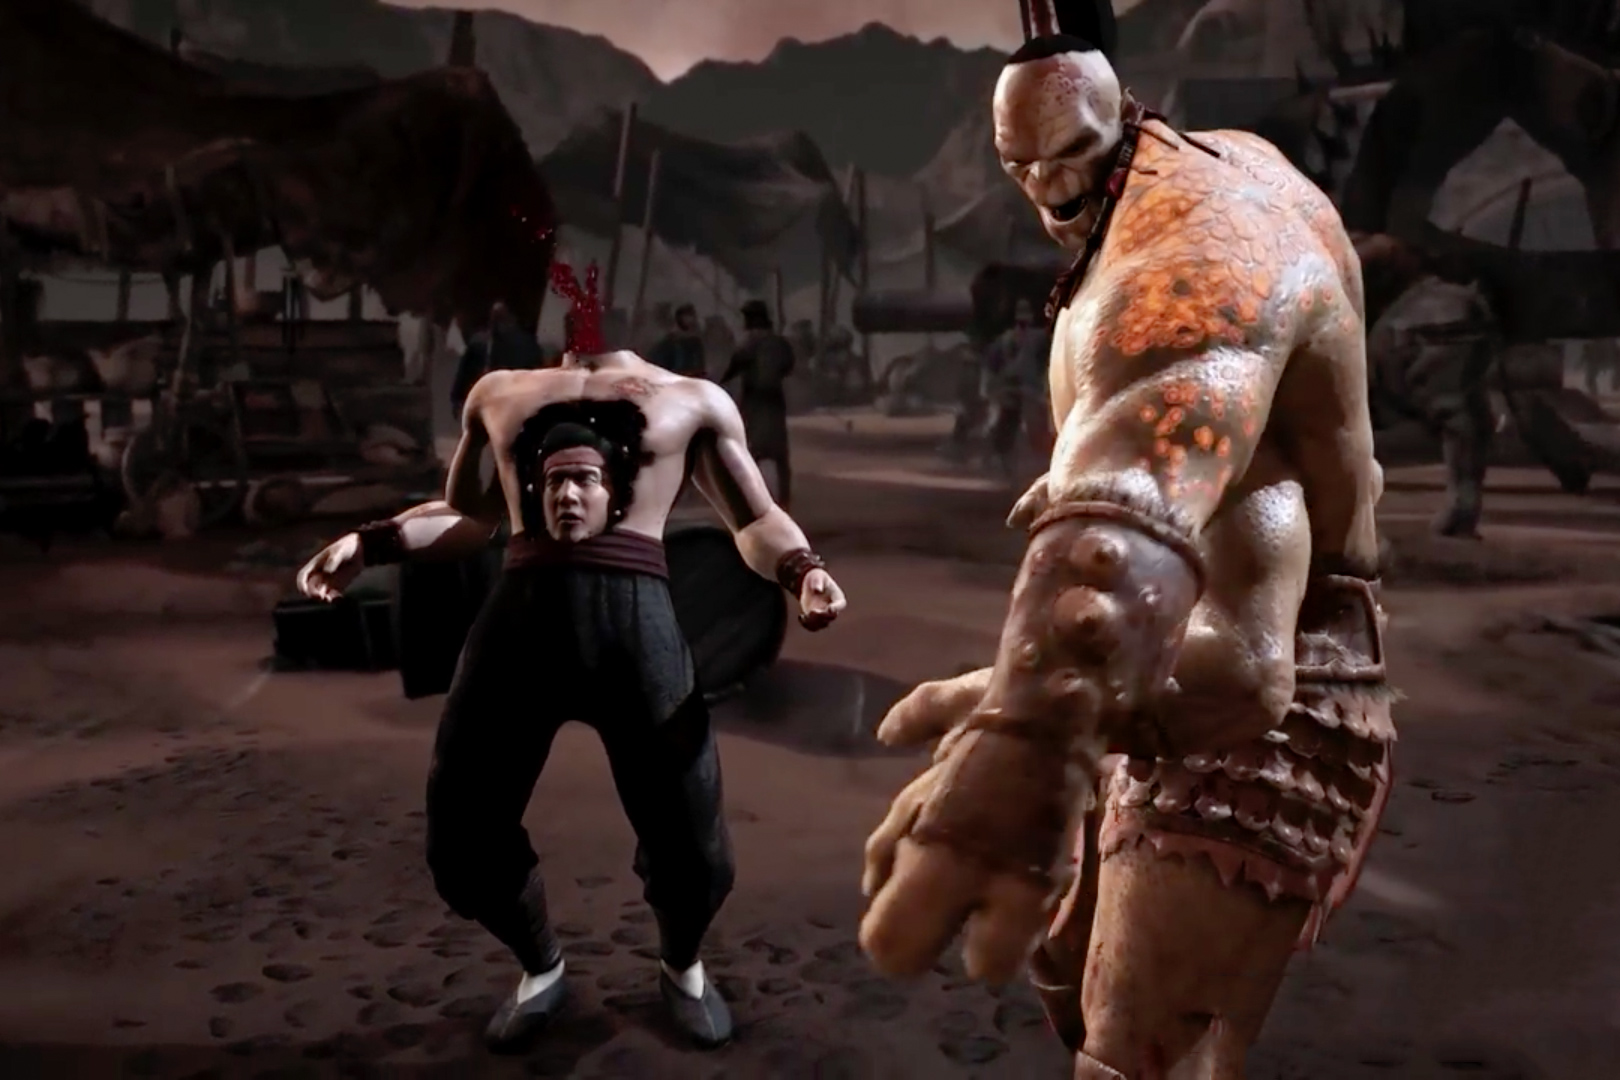 Os 10 melhores fatalities de Mortal Kombat!